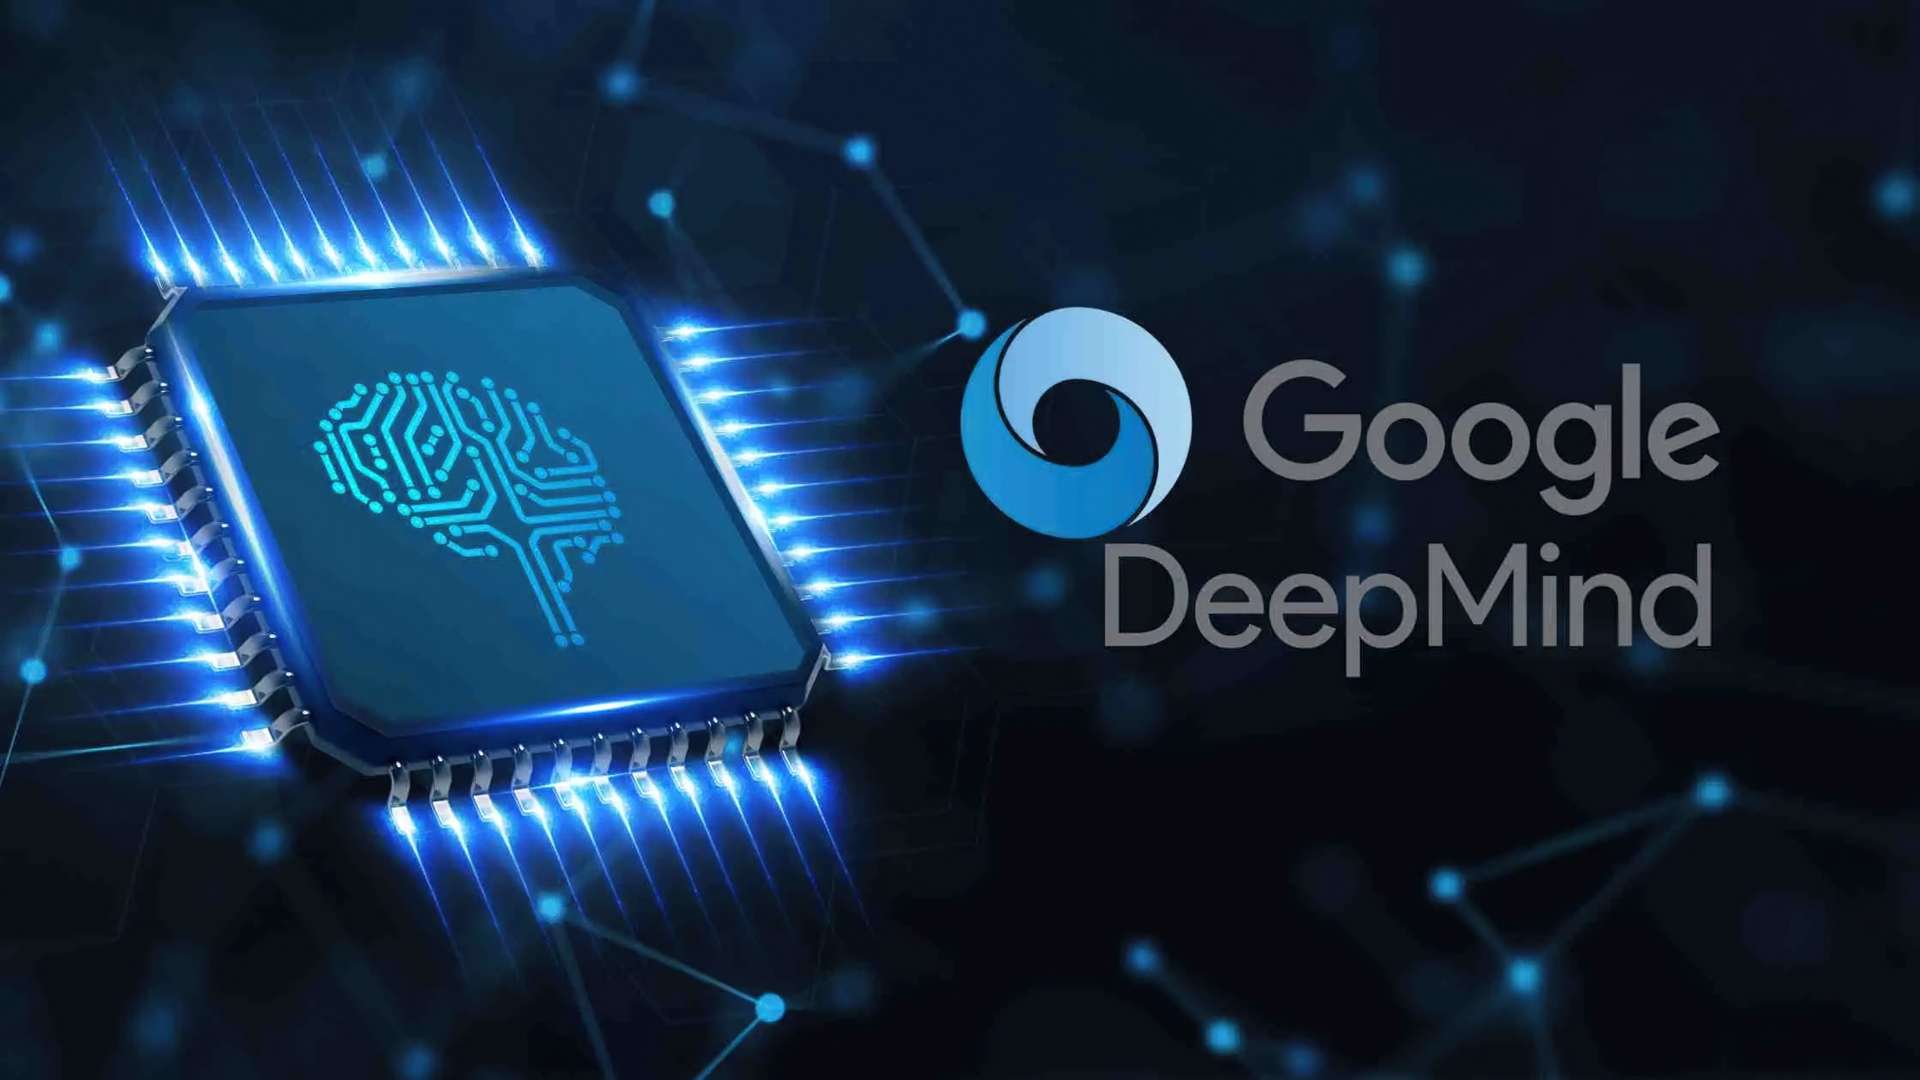 DeepMind от Google заявляет, что находится на грани достижения интеллекта человеческого уровня